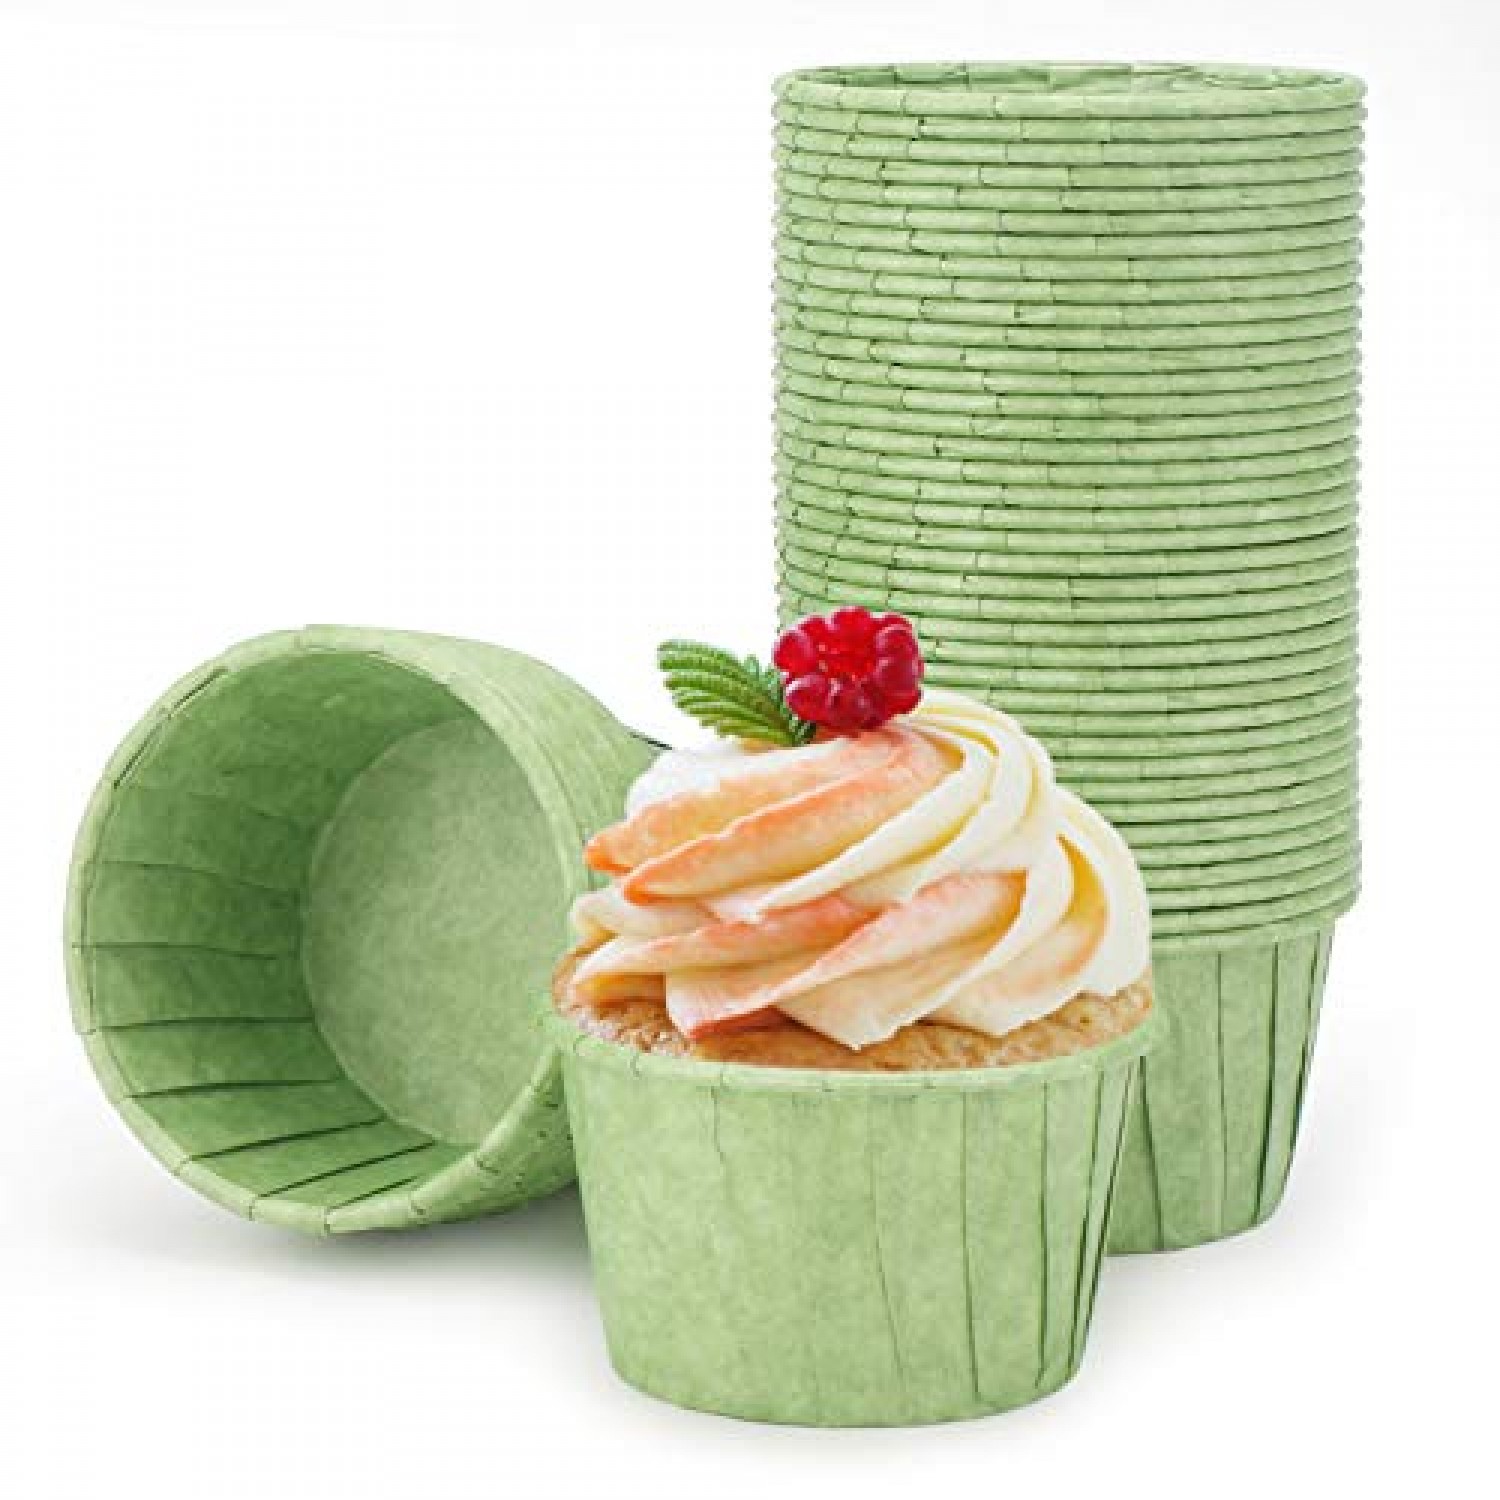 Baking Cups, Eusoar 50pcs 3.5oz Cupcake Liners, Christmas Muffin Cupcake  Liners, Cupcake Wrappers, Cupcake paper, Paper Cupcake Liners Holder